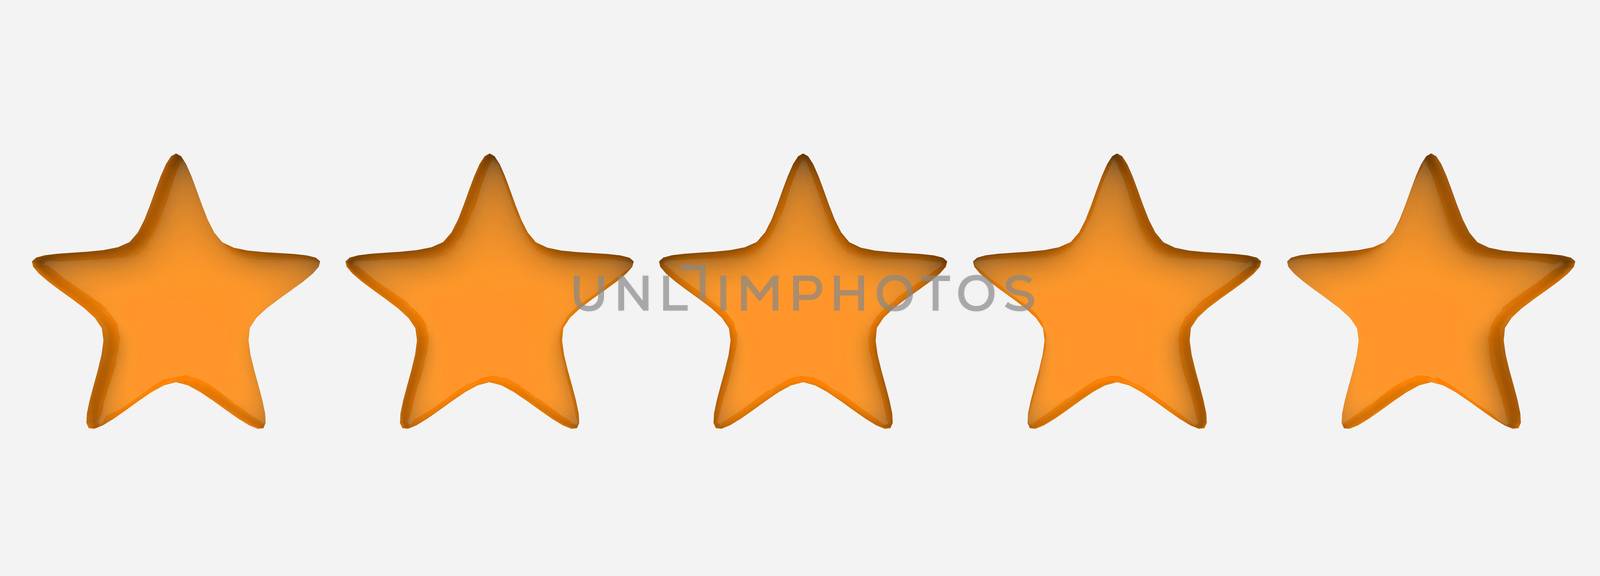 3d five orange star on color background. Render and illustration of golden star for premium